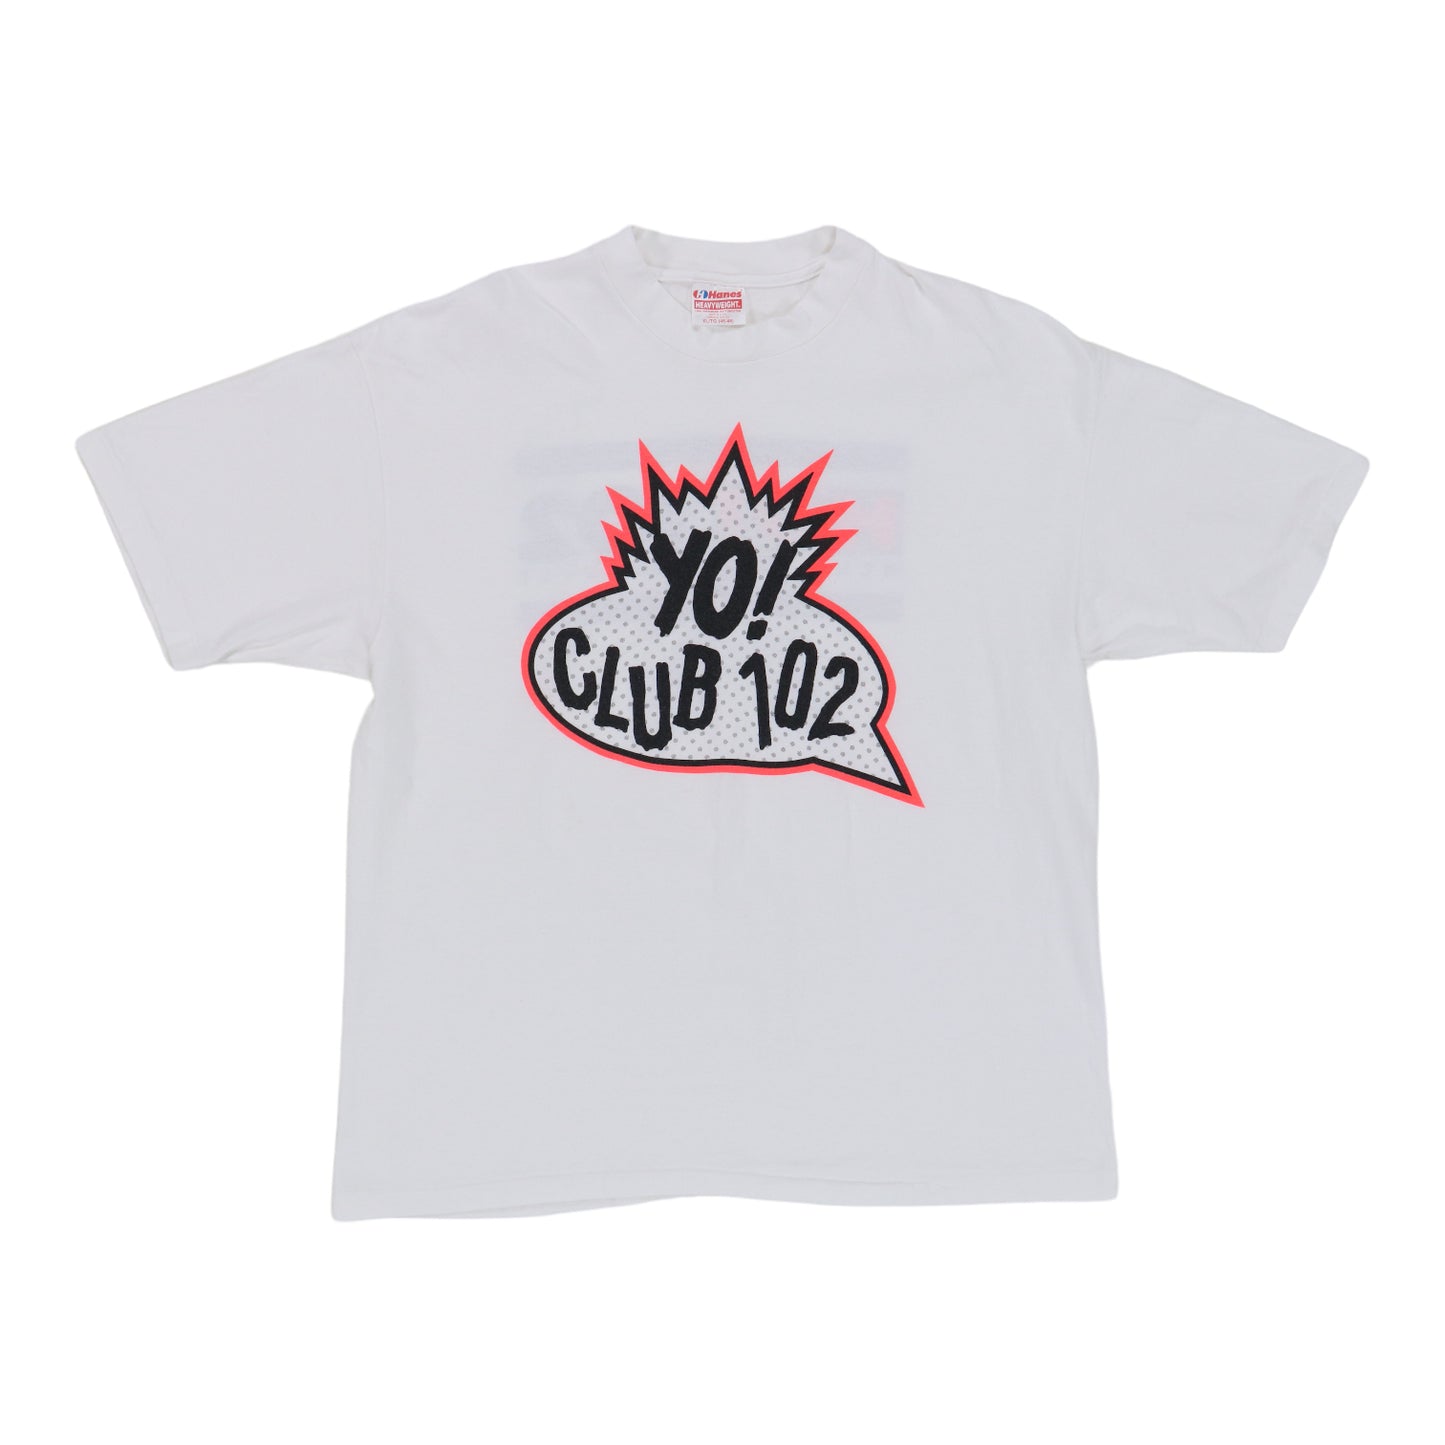 1990s Yo! Hot 102 Radio Shirt